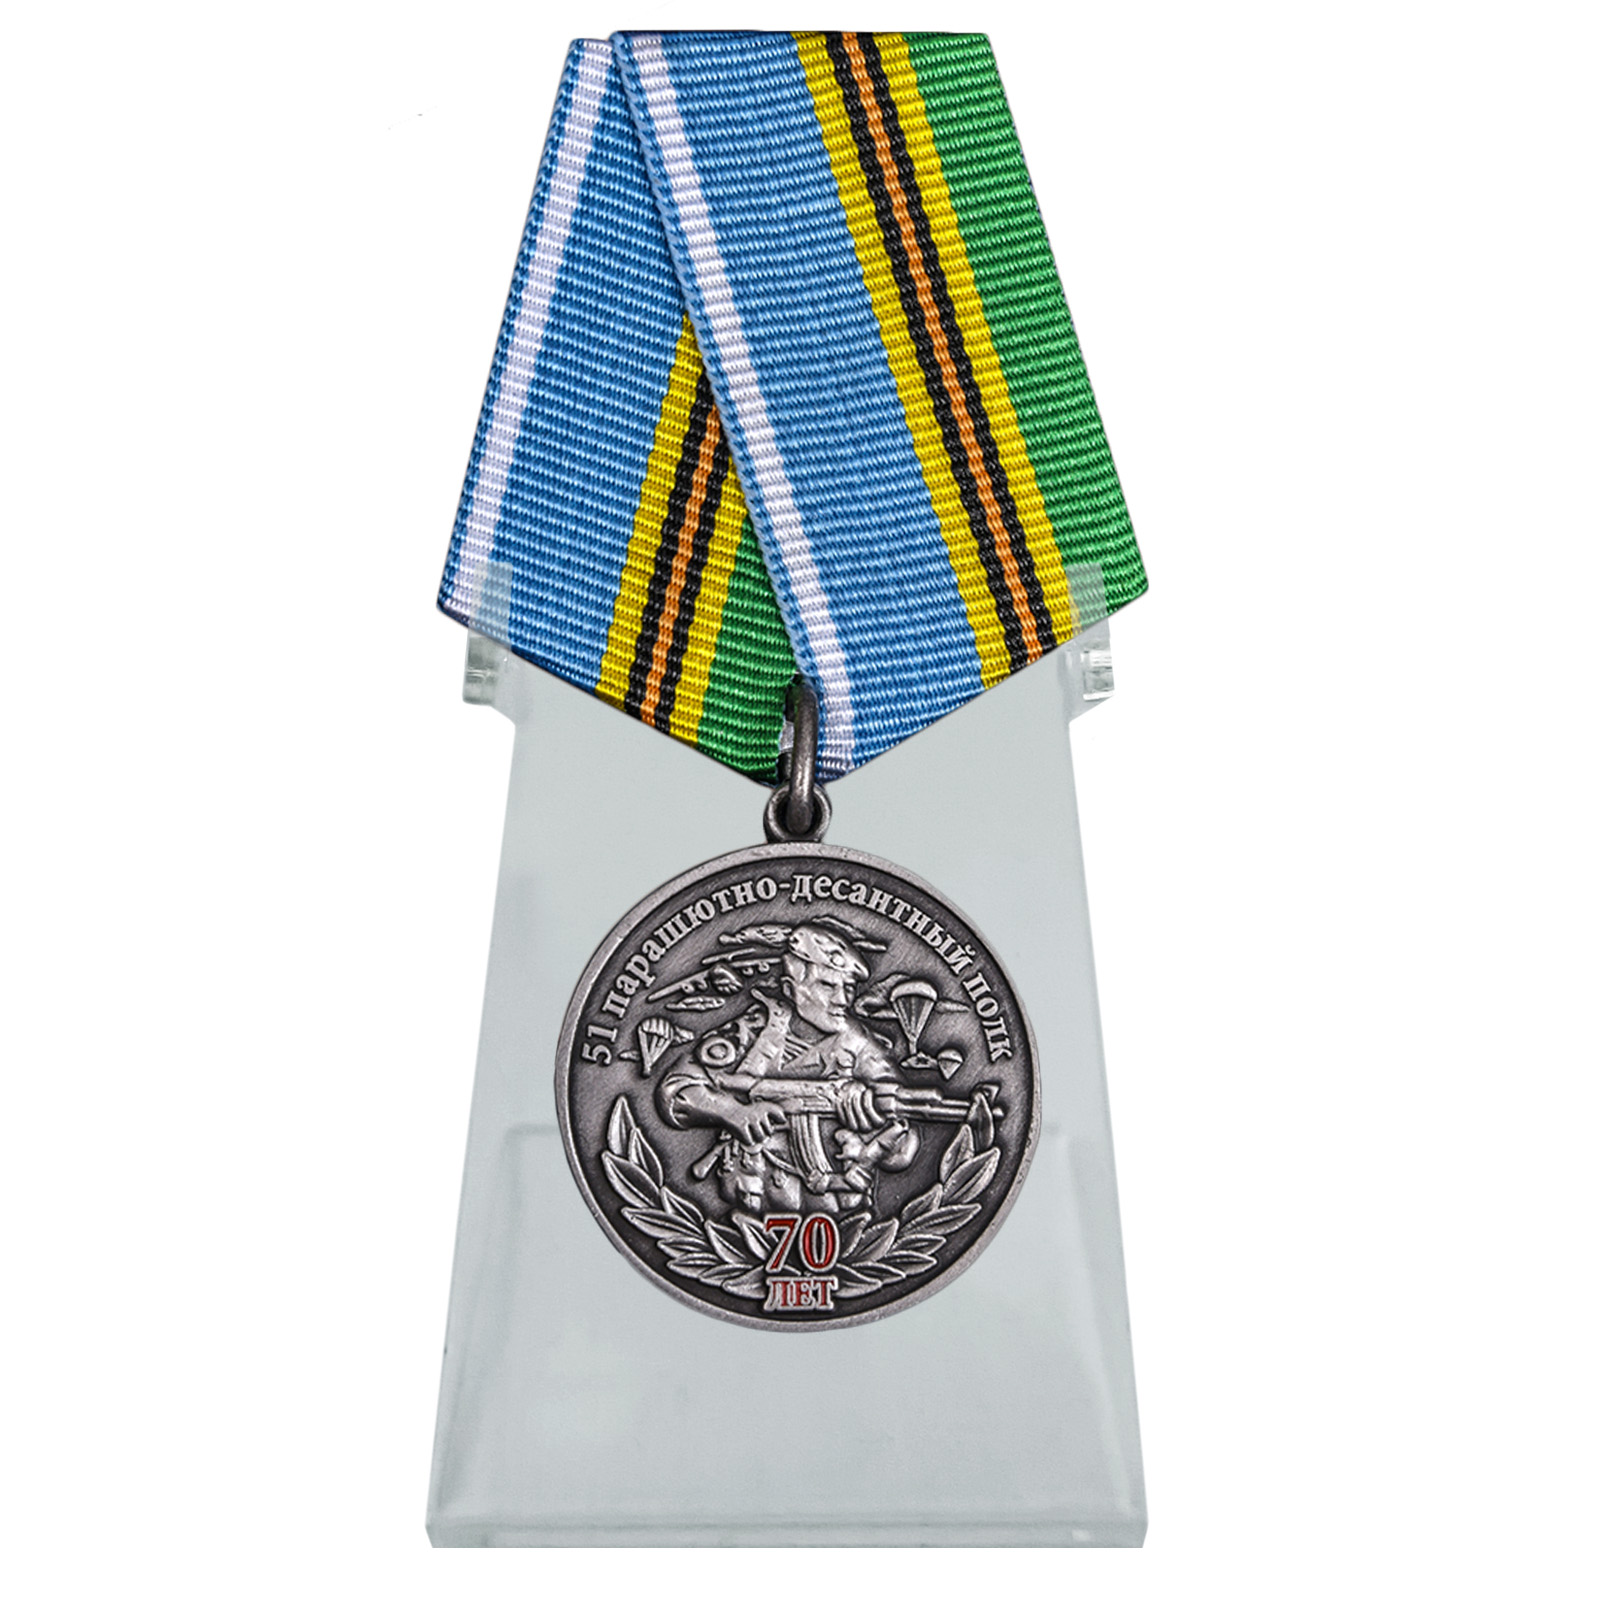 Купить медаль 51 Парашютно-десантной полк 70 лет на подставке онлайн в подарок